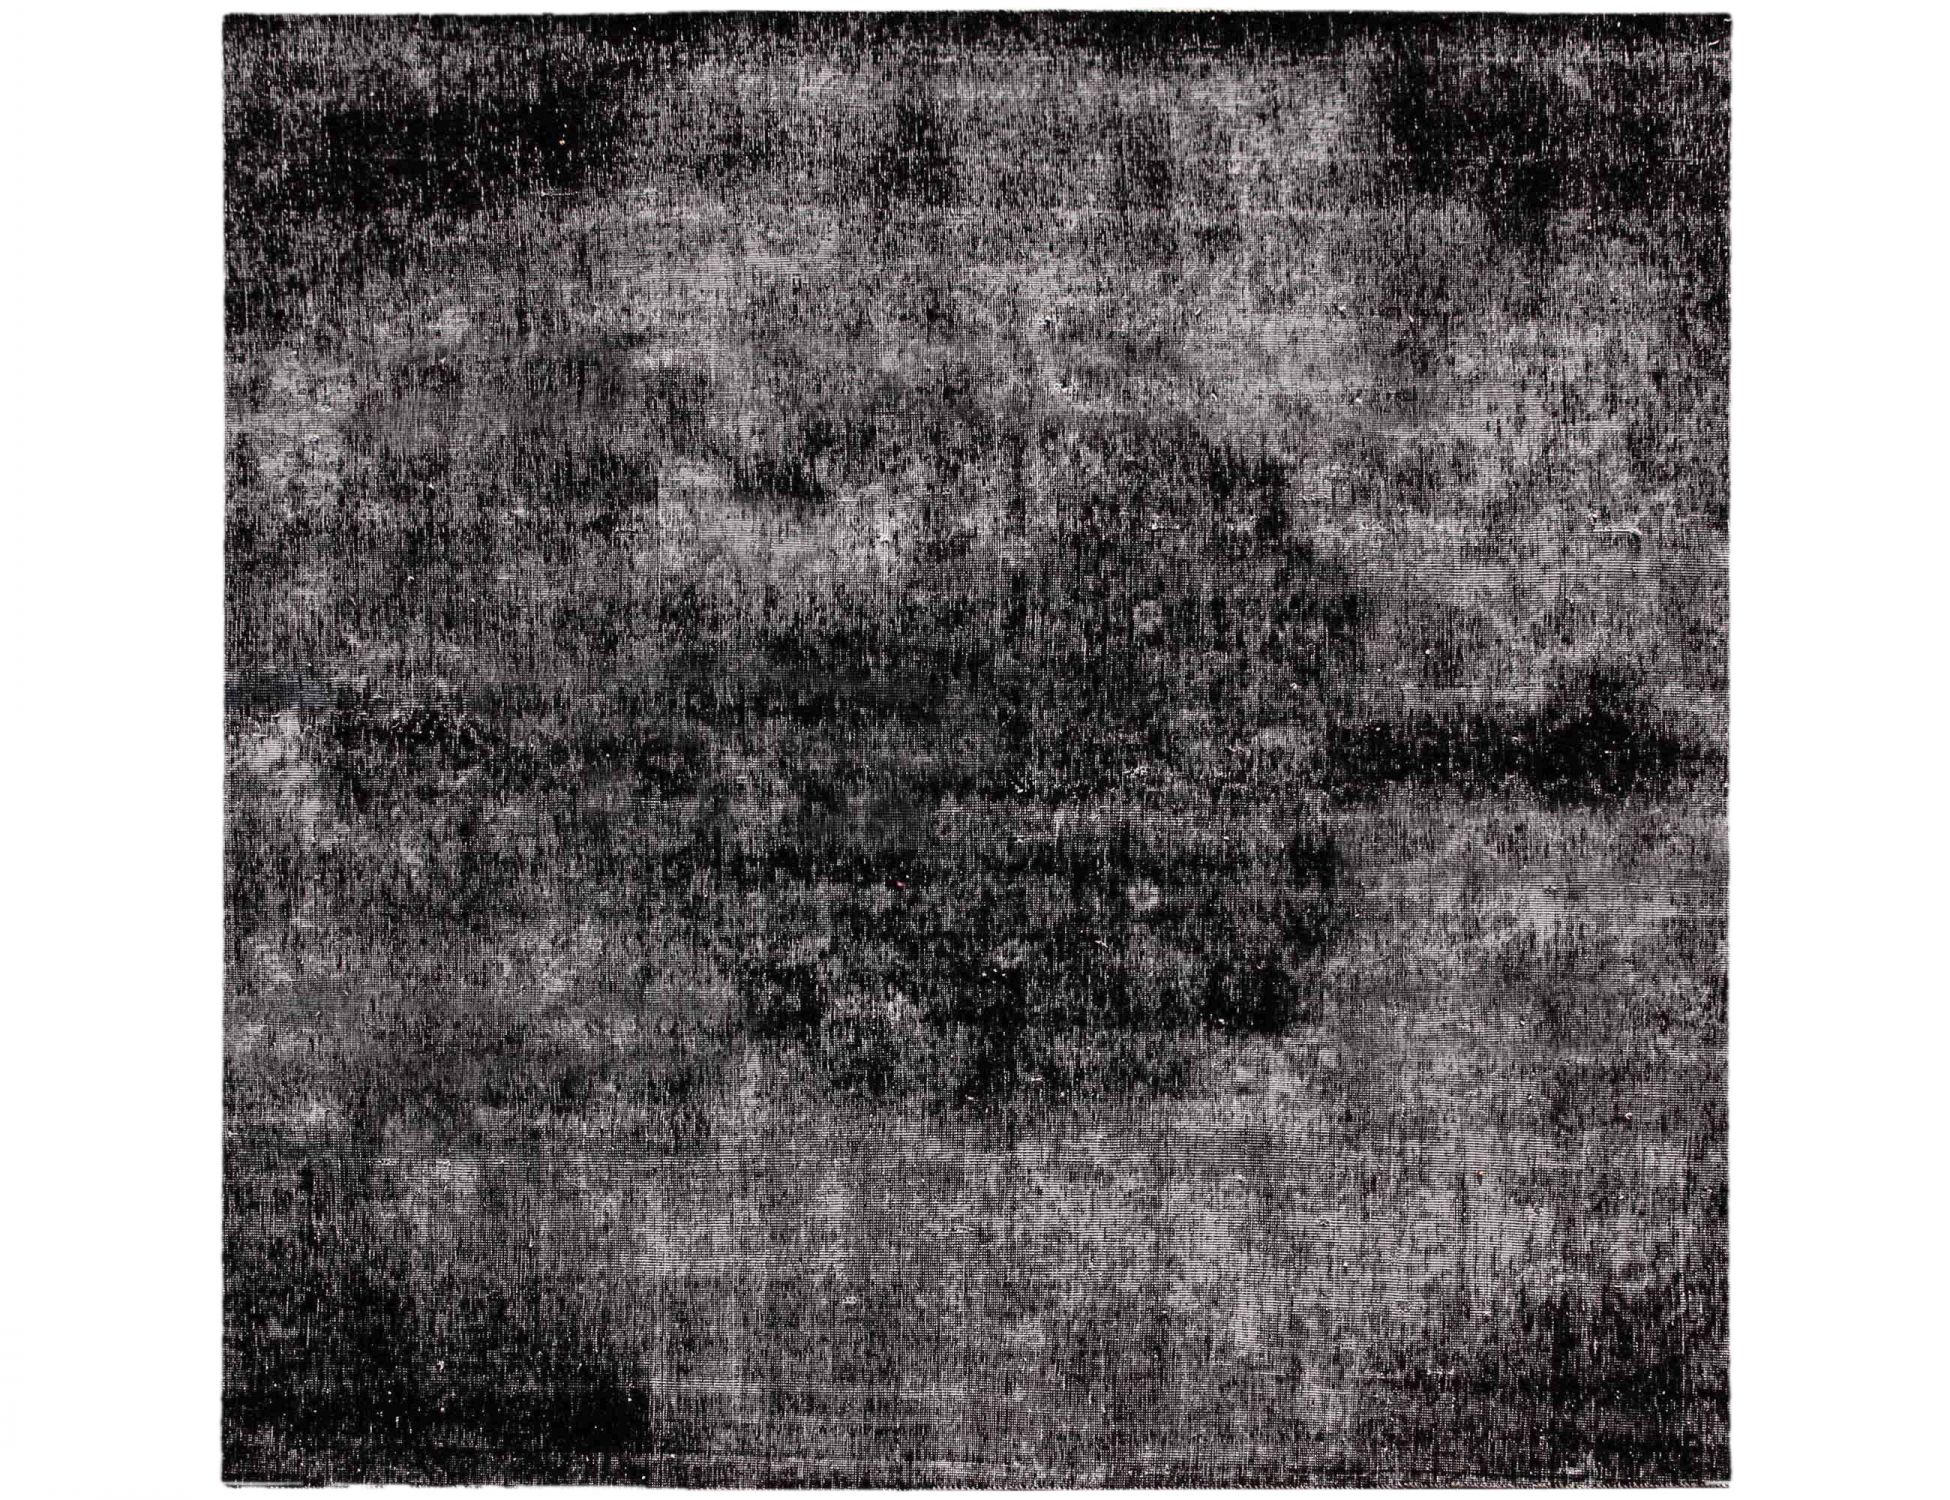 Persischer Vintage Teppich  schwarz <br/>220 x 220 cm